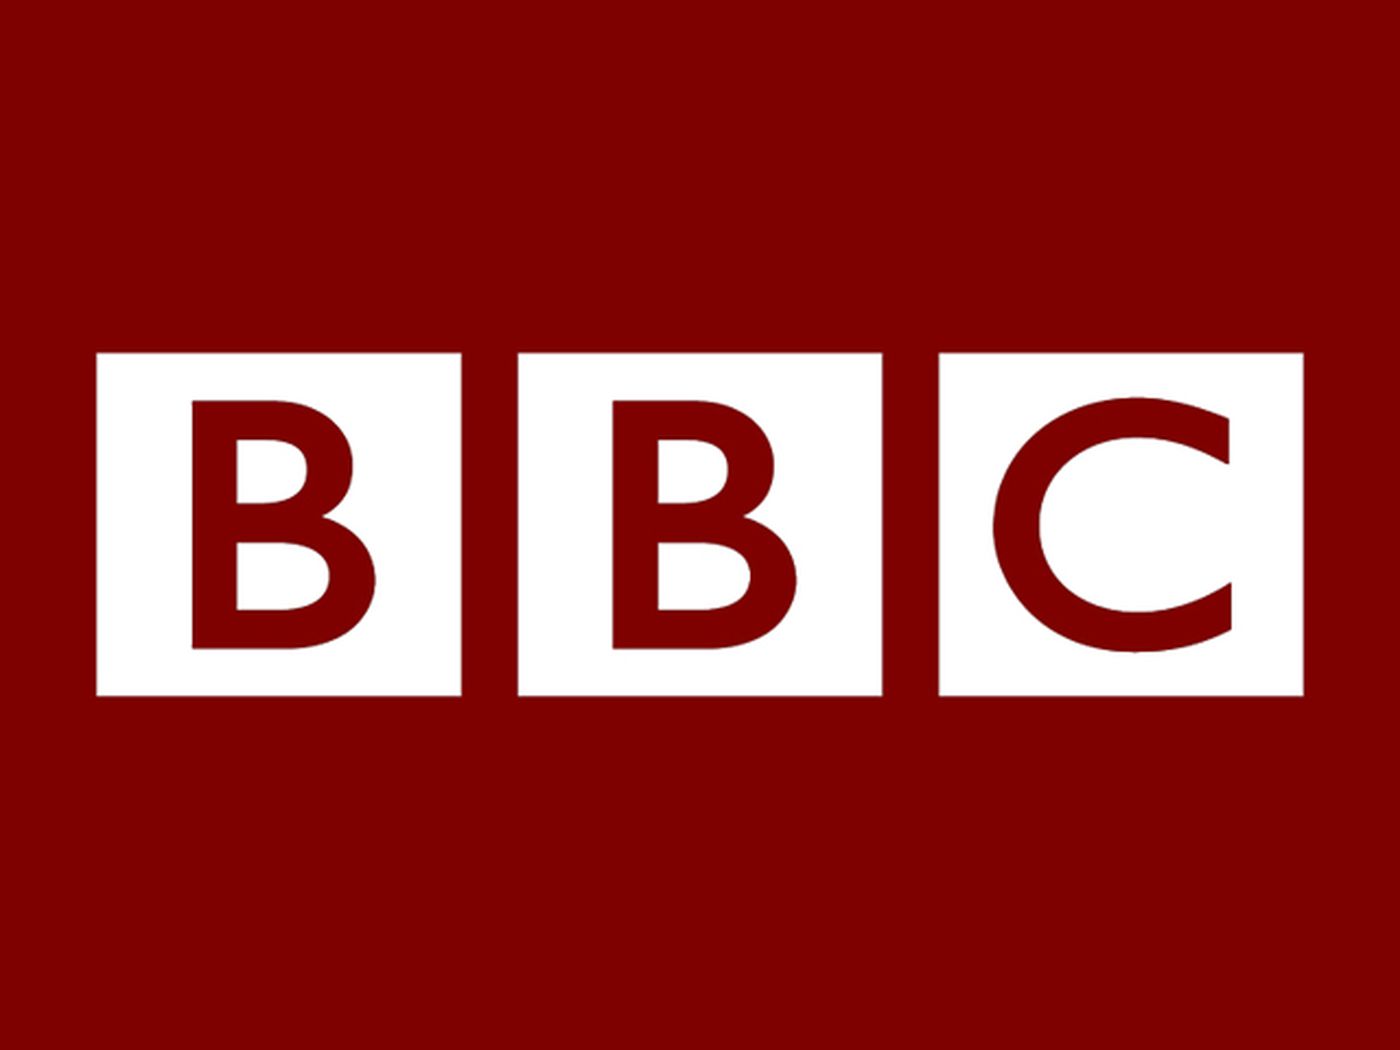 BBC har förbjudit OpenAI att samla in data från sina webbplatser, men har uttryckt ett engagemang för AI-journalistik